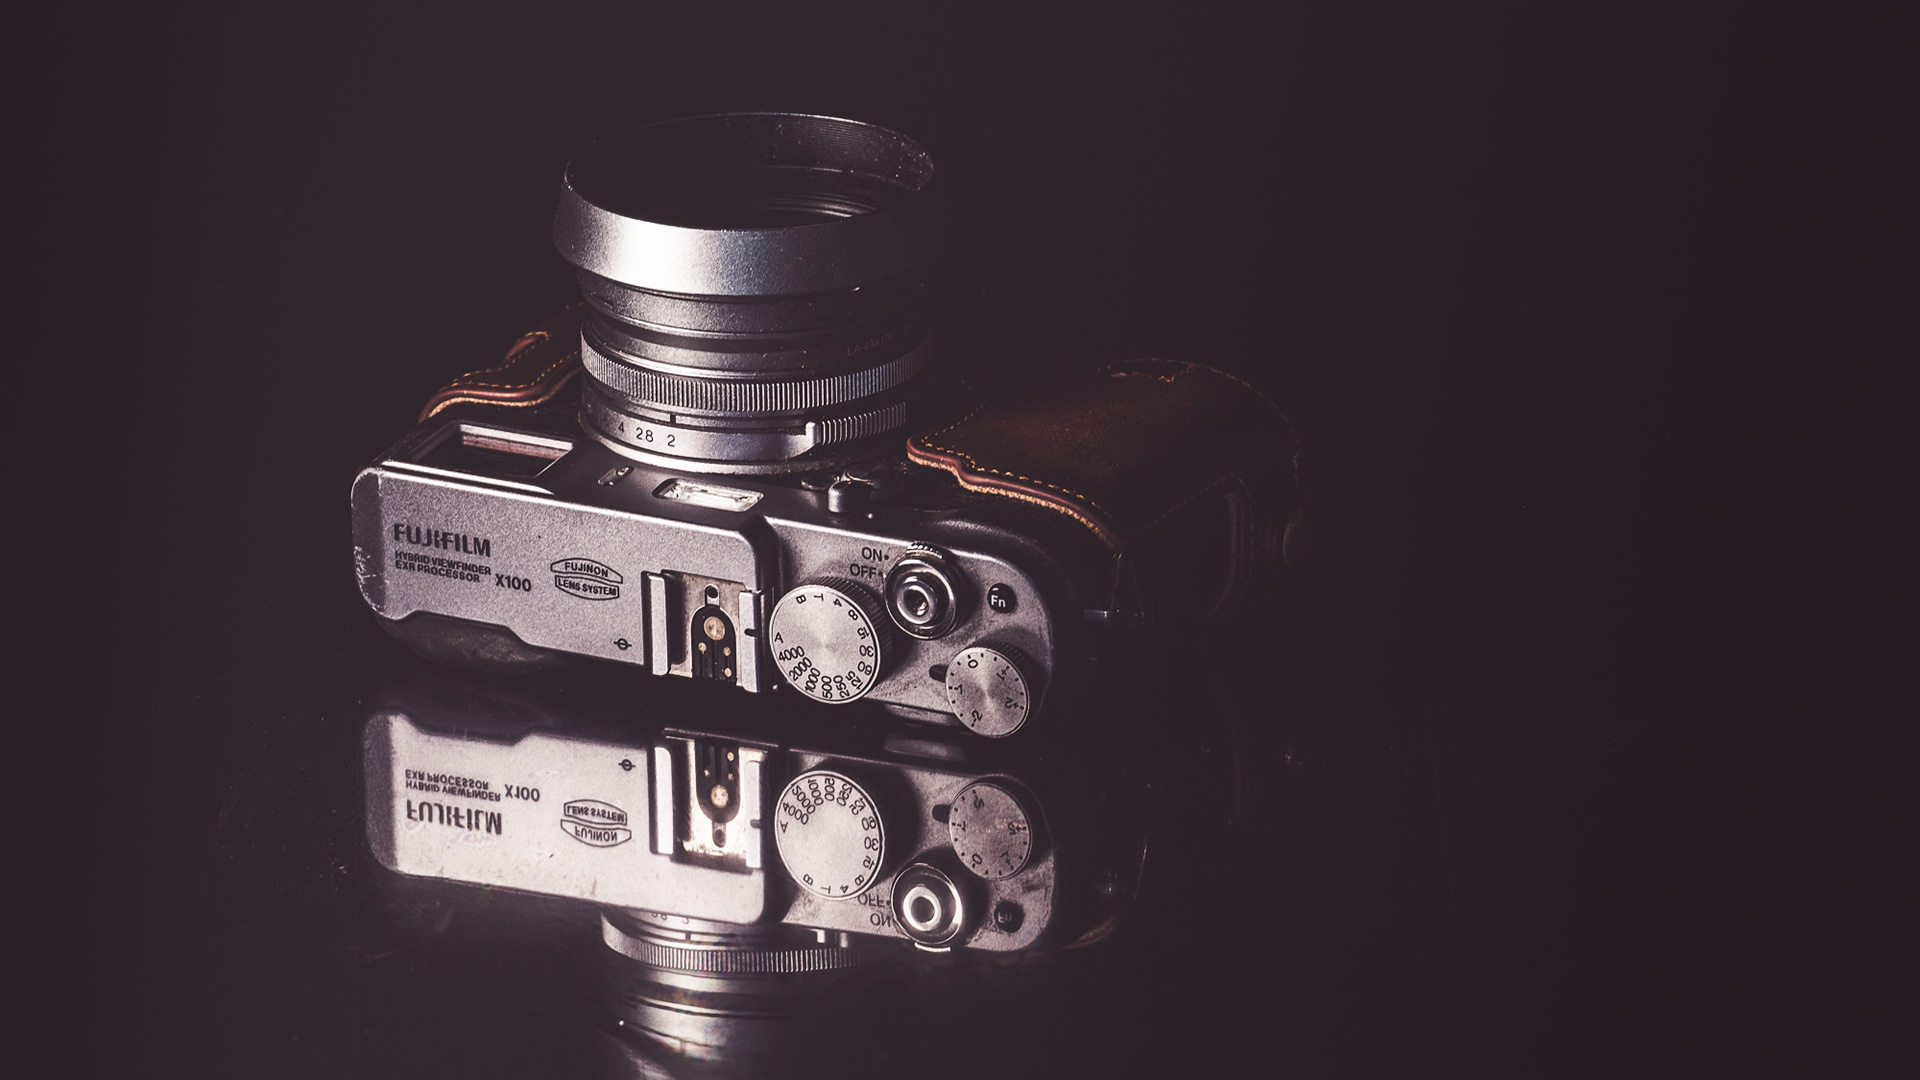 Fujifilm, X100, camera, Fuji X100, 23mm lens,